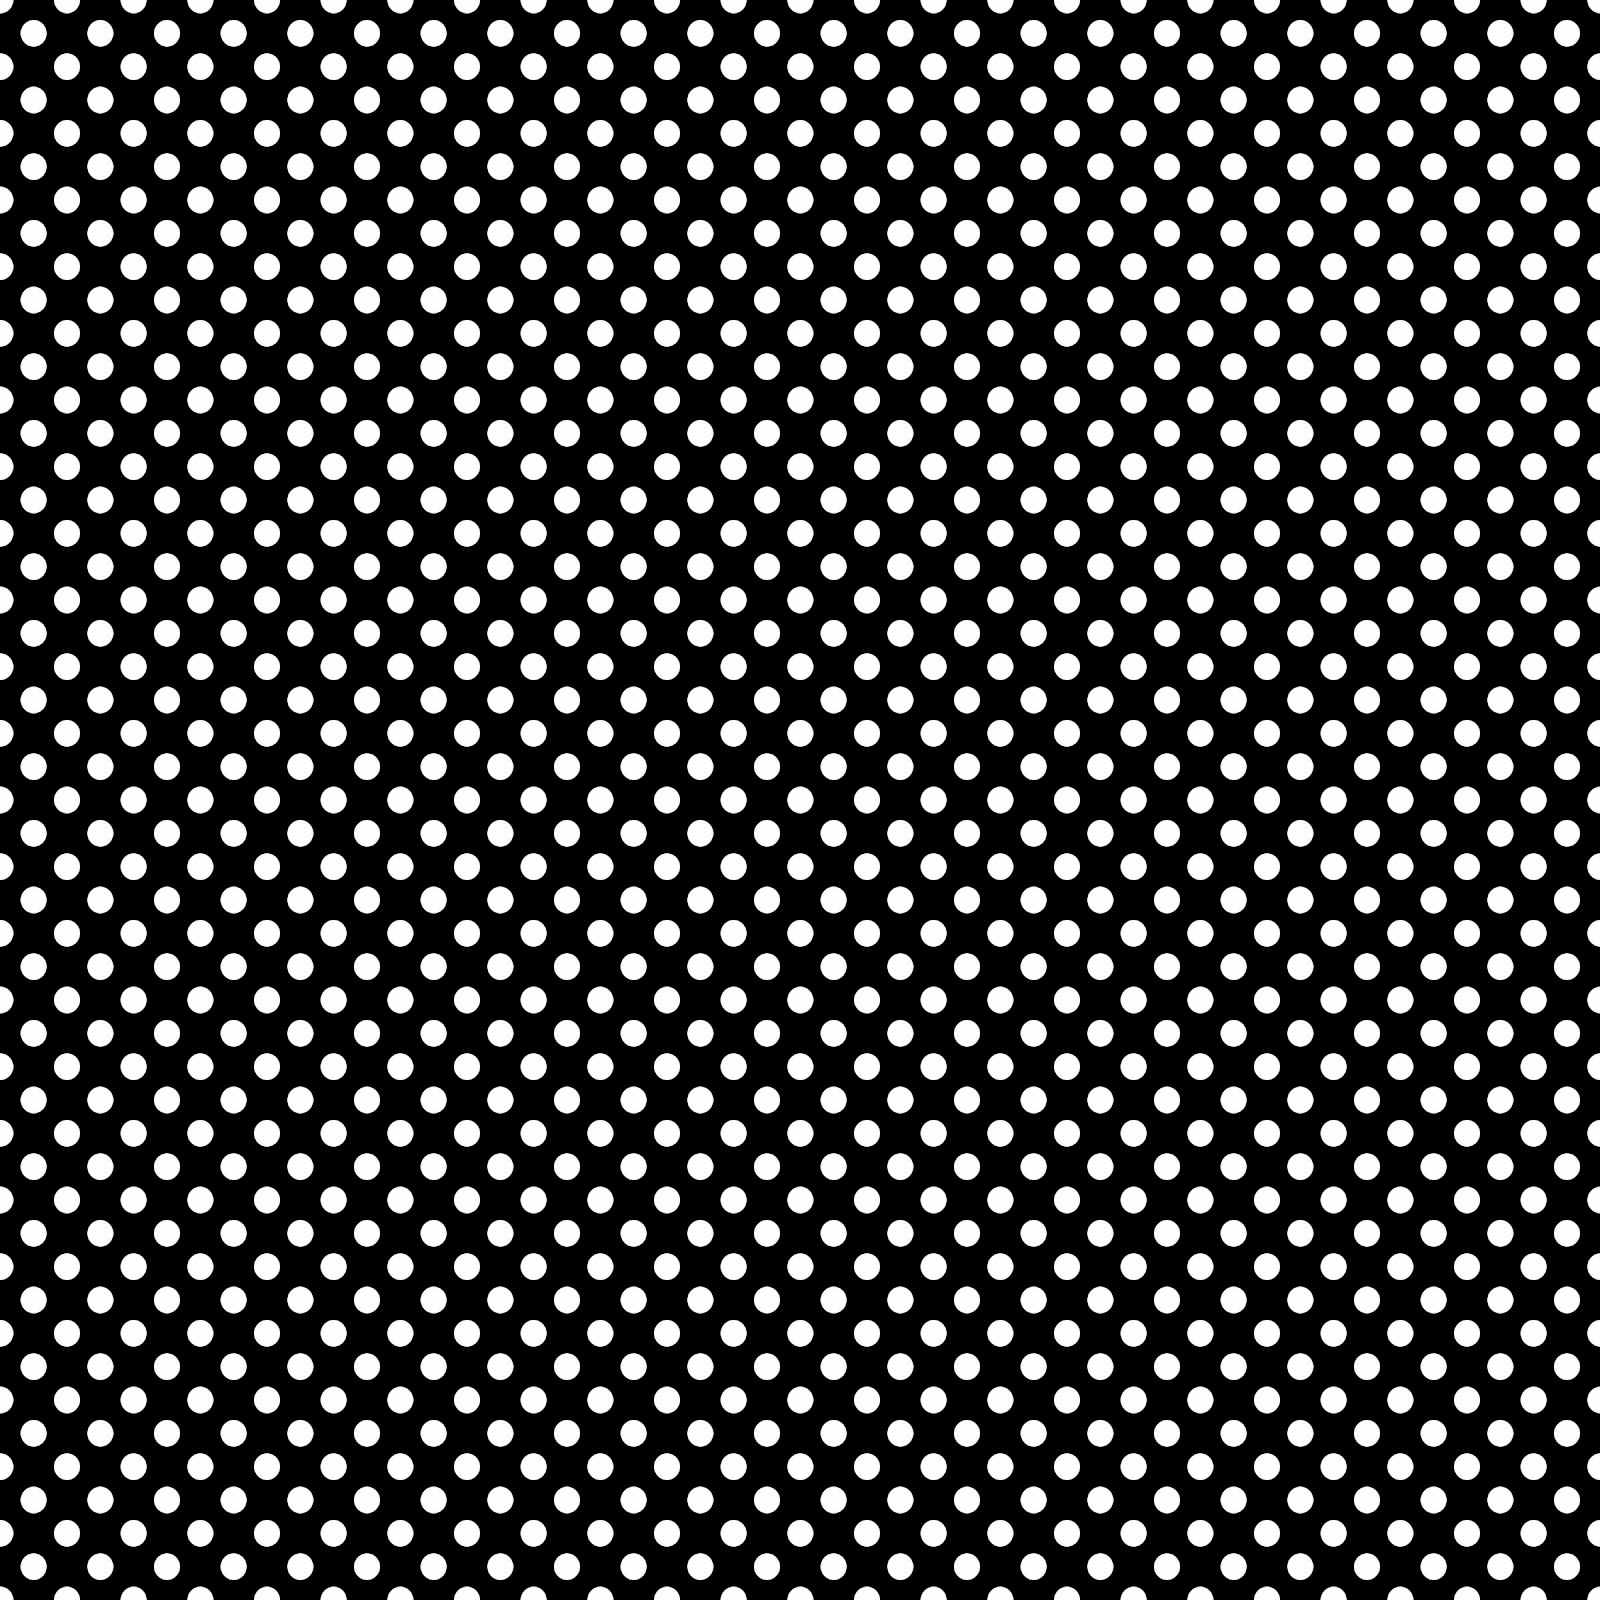 [45+] Black Polka Dot Wallpaper | WallpaperSafari.com